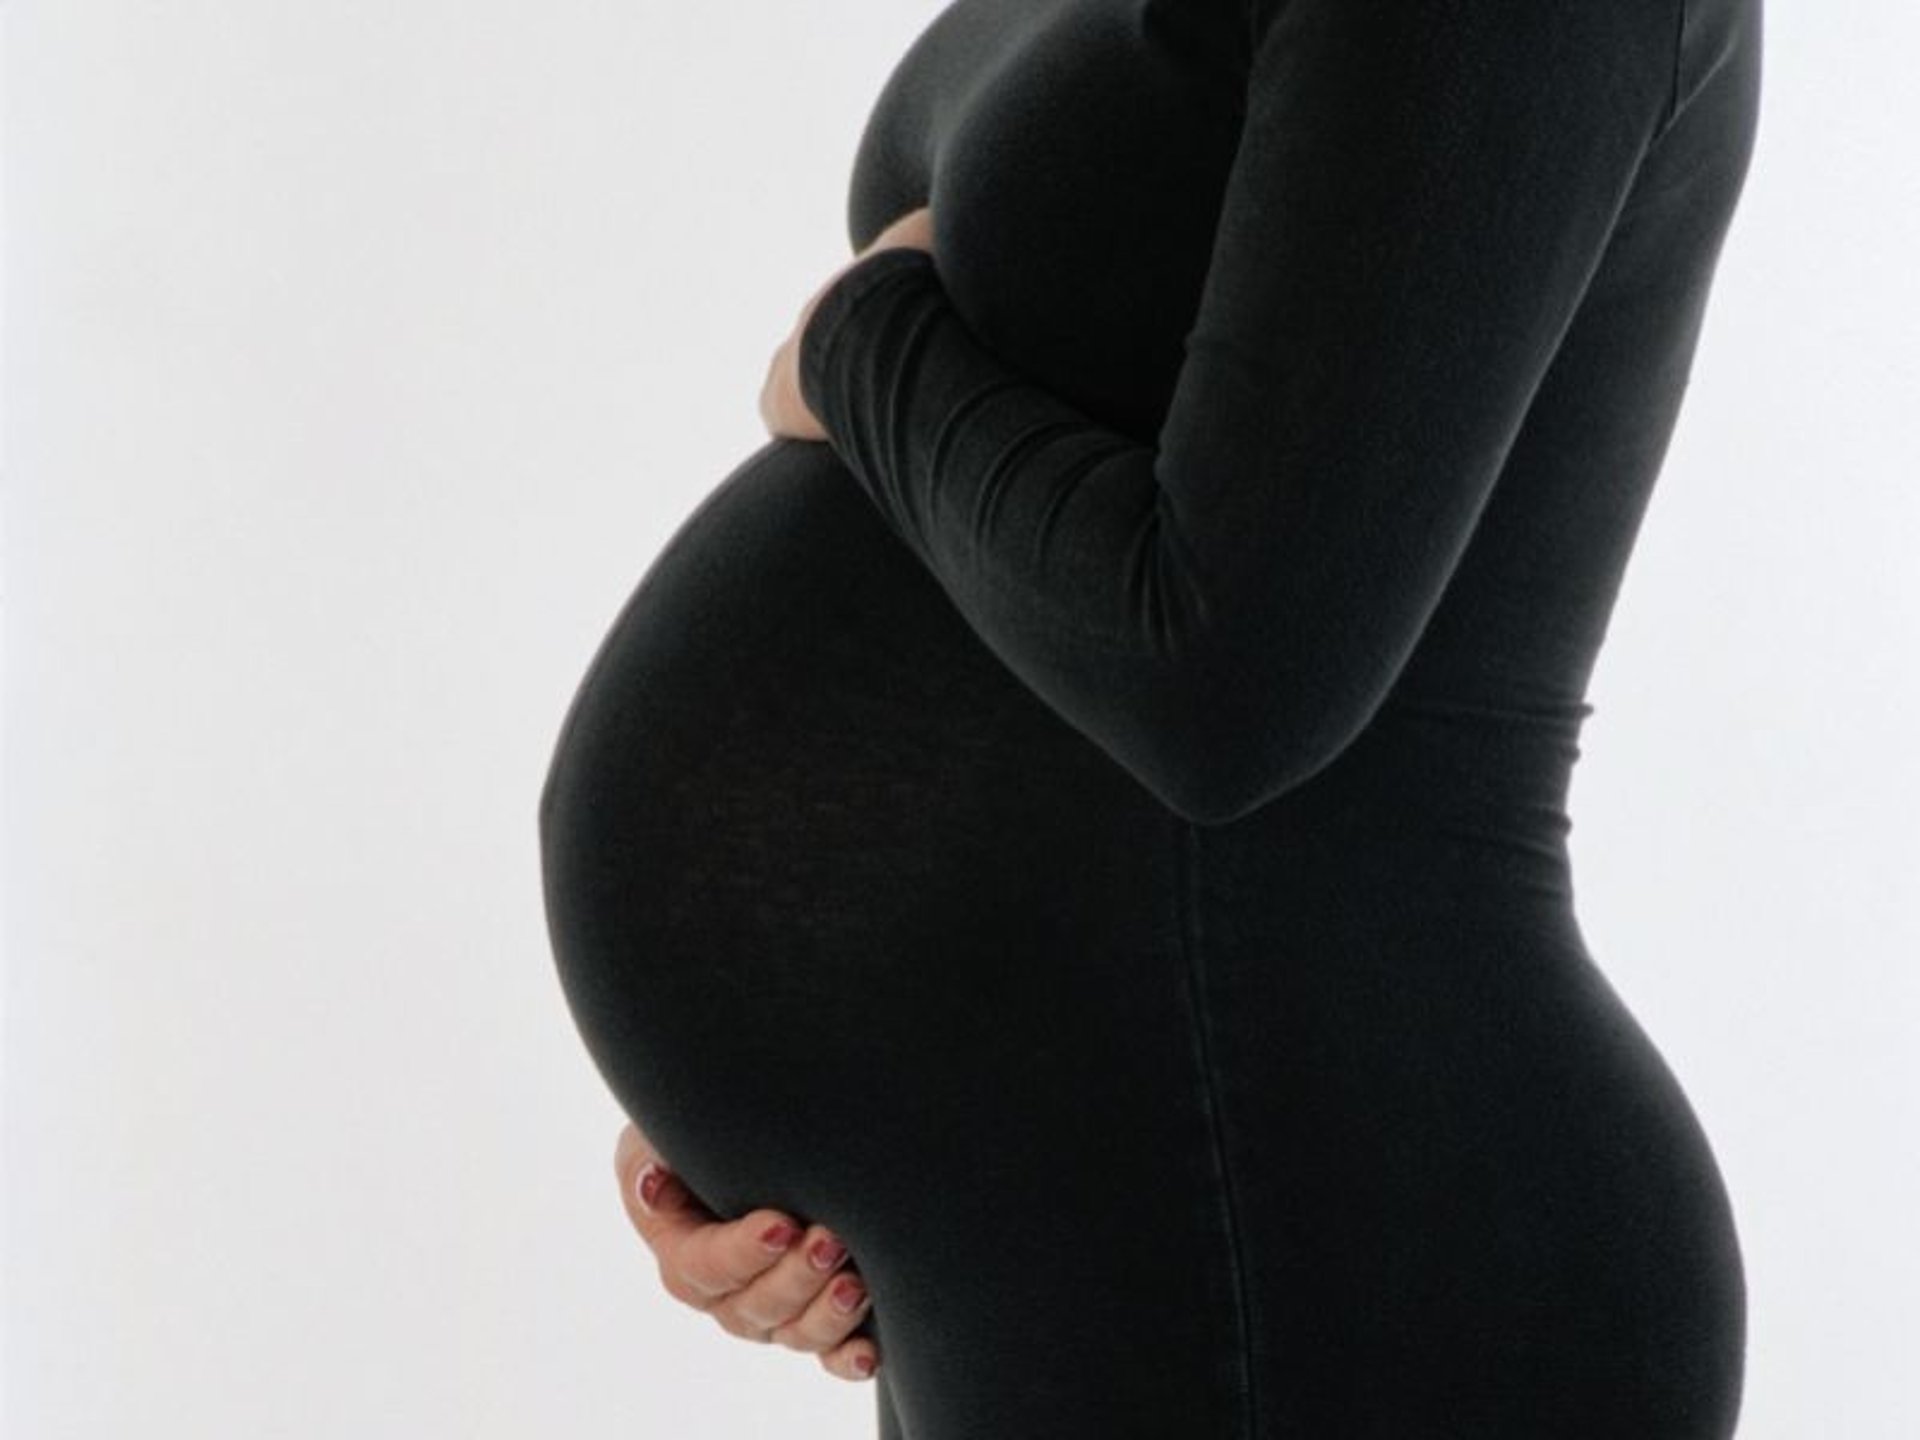 Imagen de noticia: La pandemia provoca más depresión en las mujeres embarazadas de todo el mundo: estudio